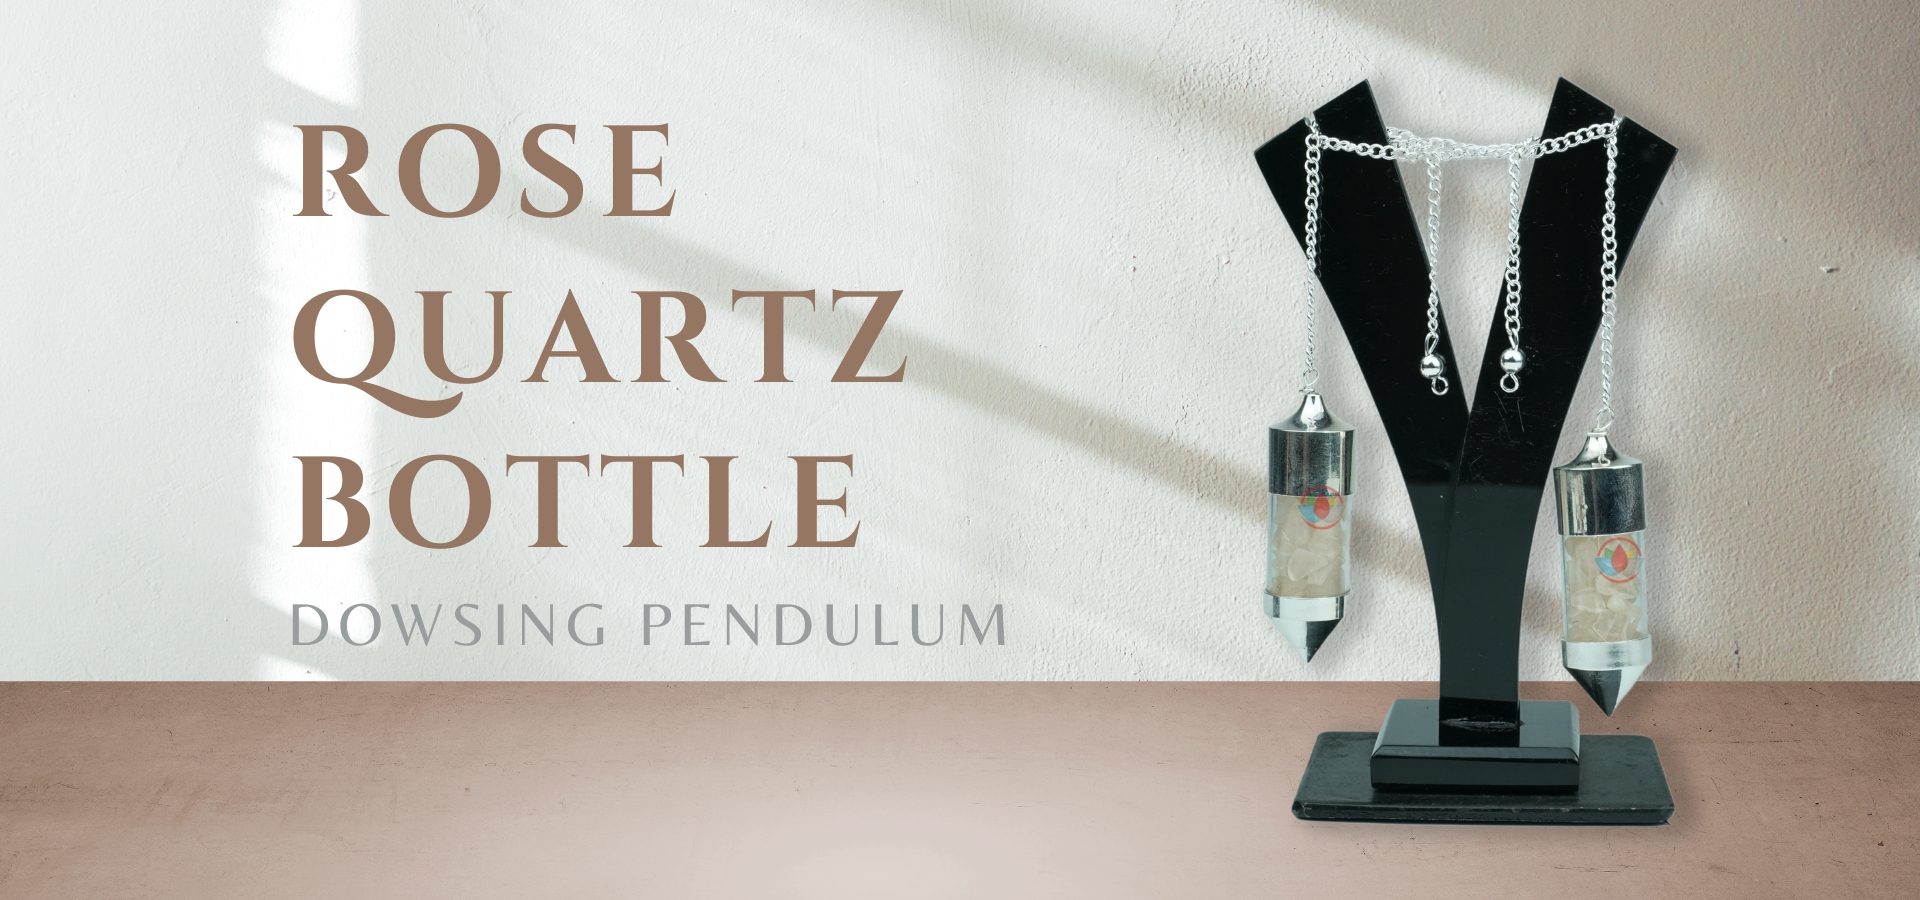 Rose Quartz Bottle Drowsing Pendulum